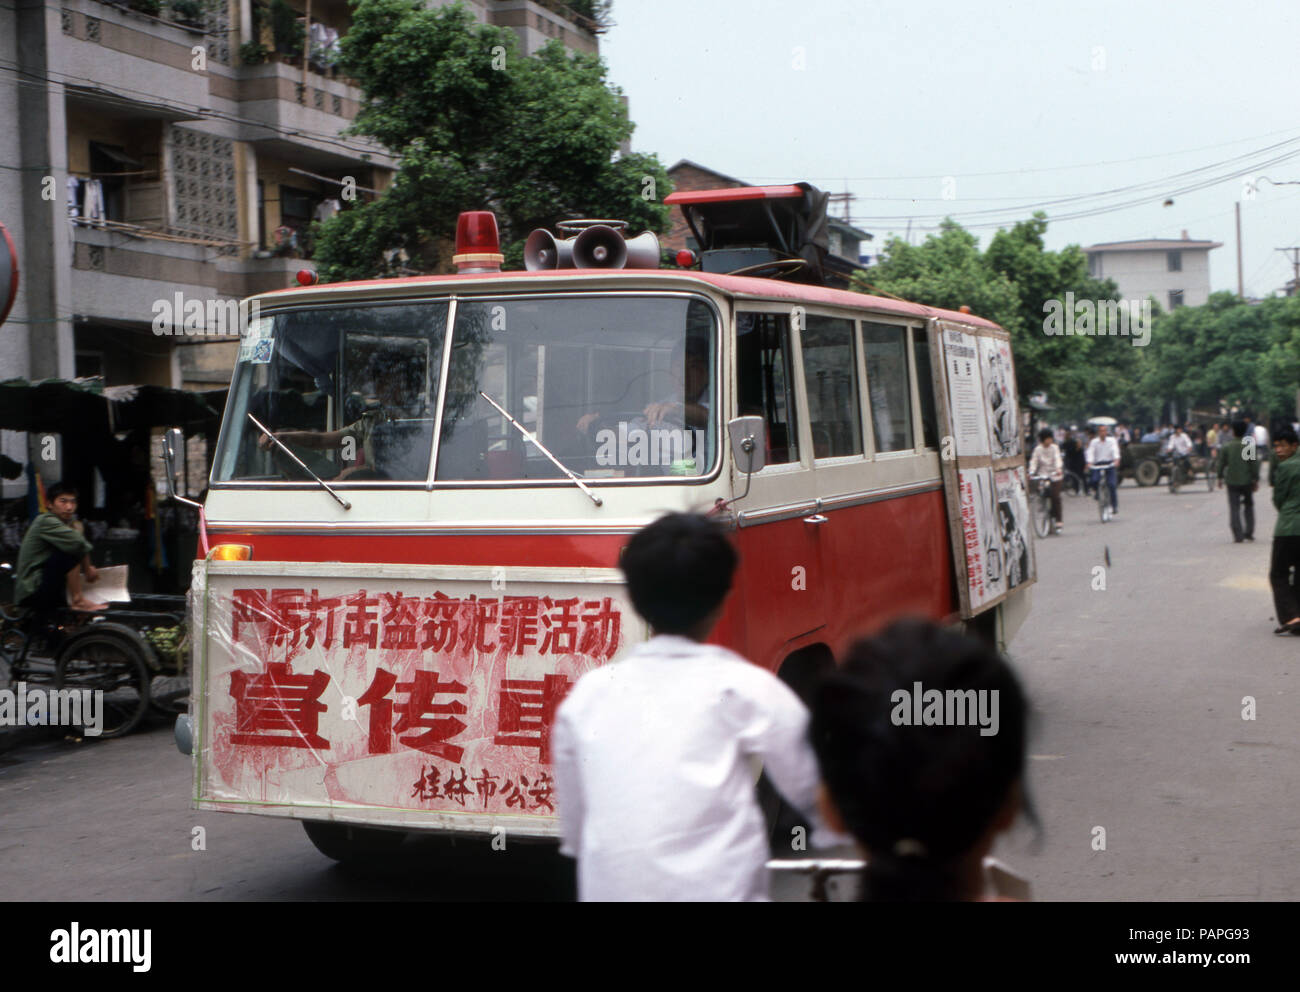 China 1986 propaganda vehicle Stock Photo